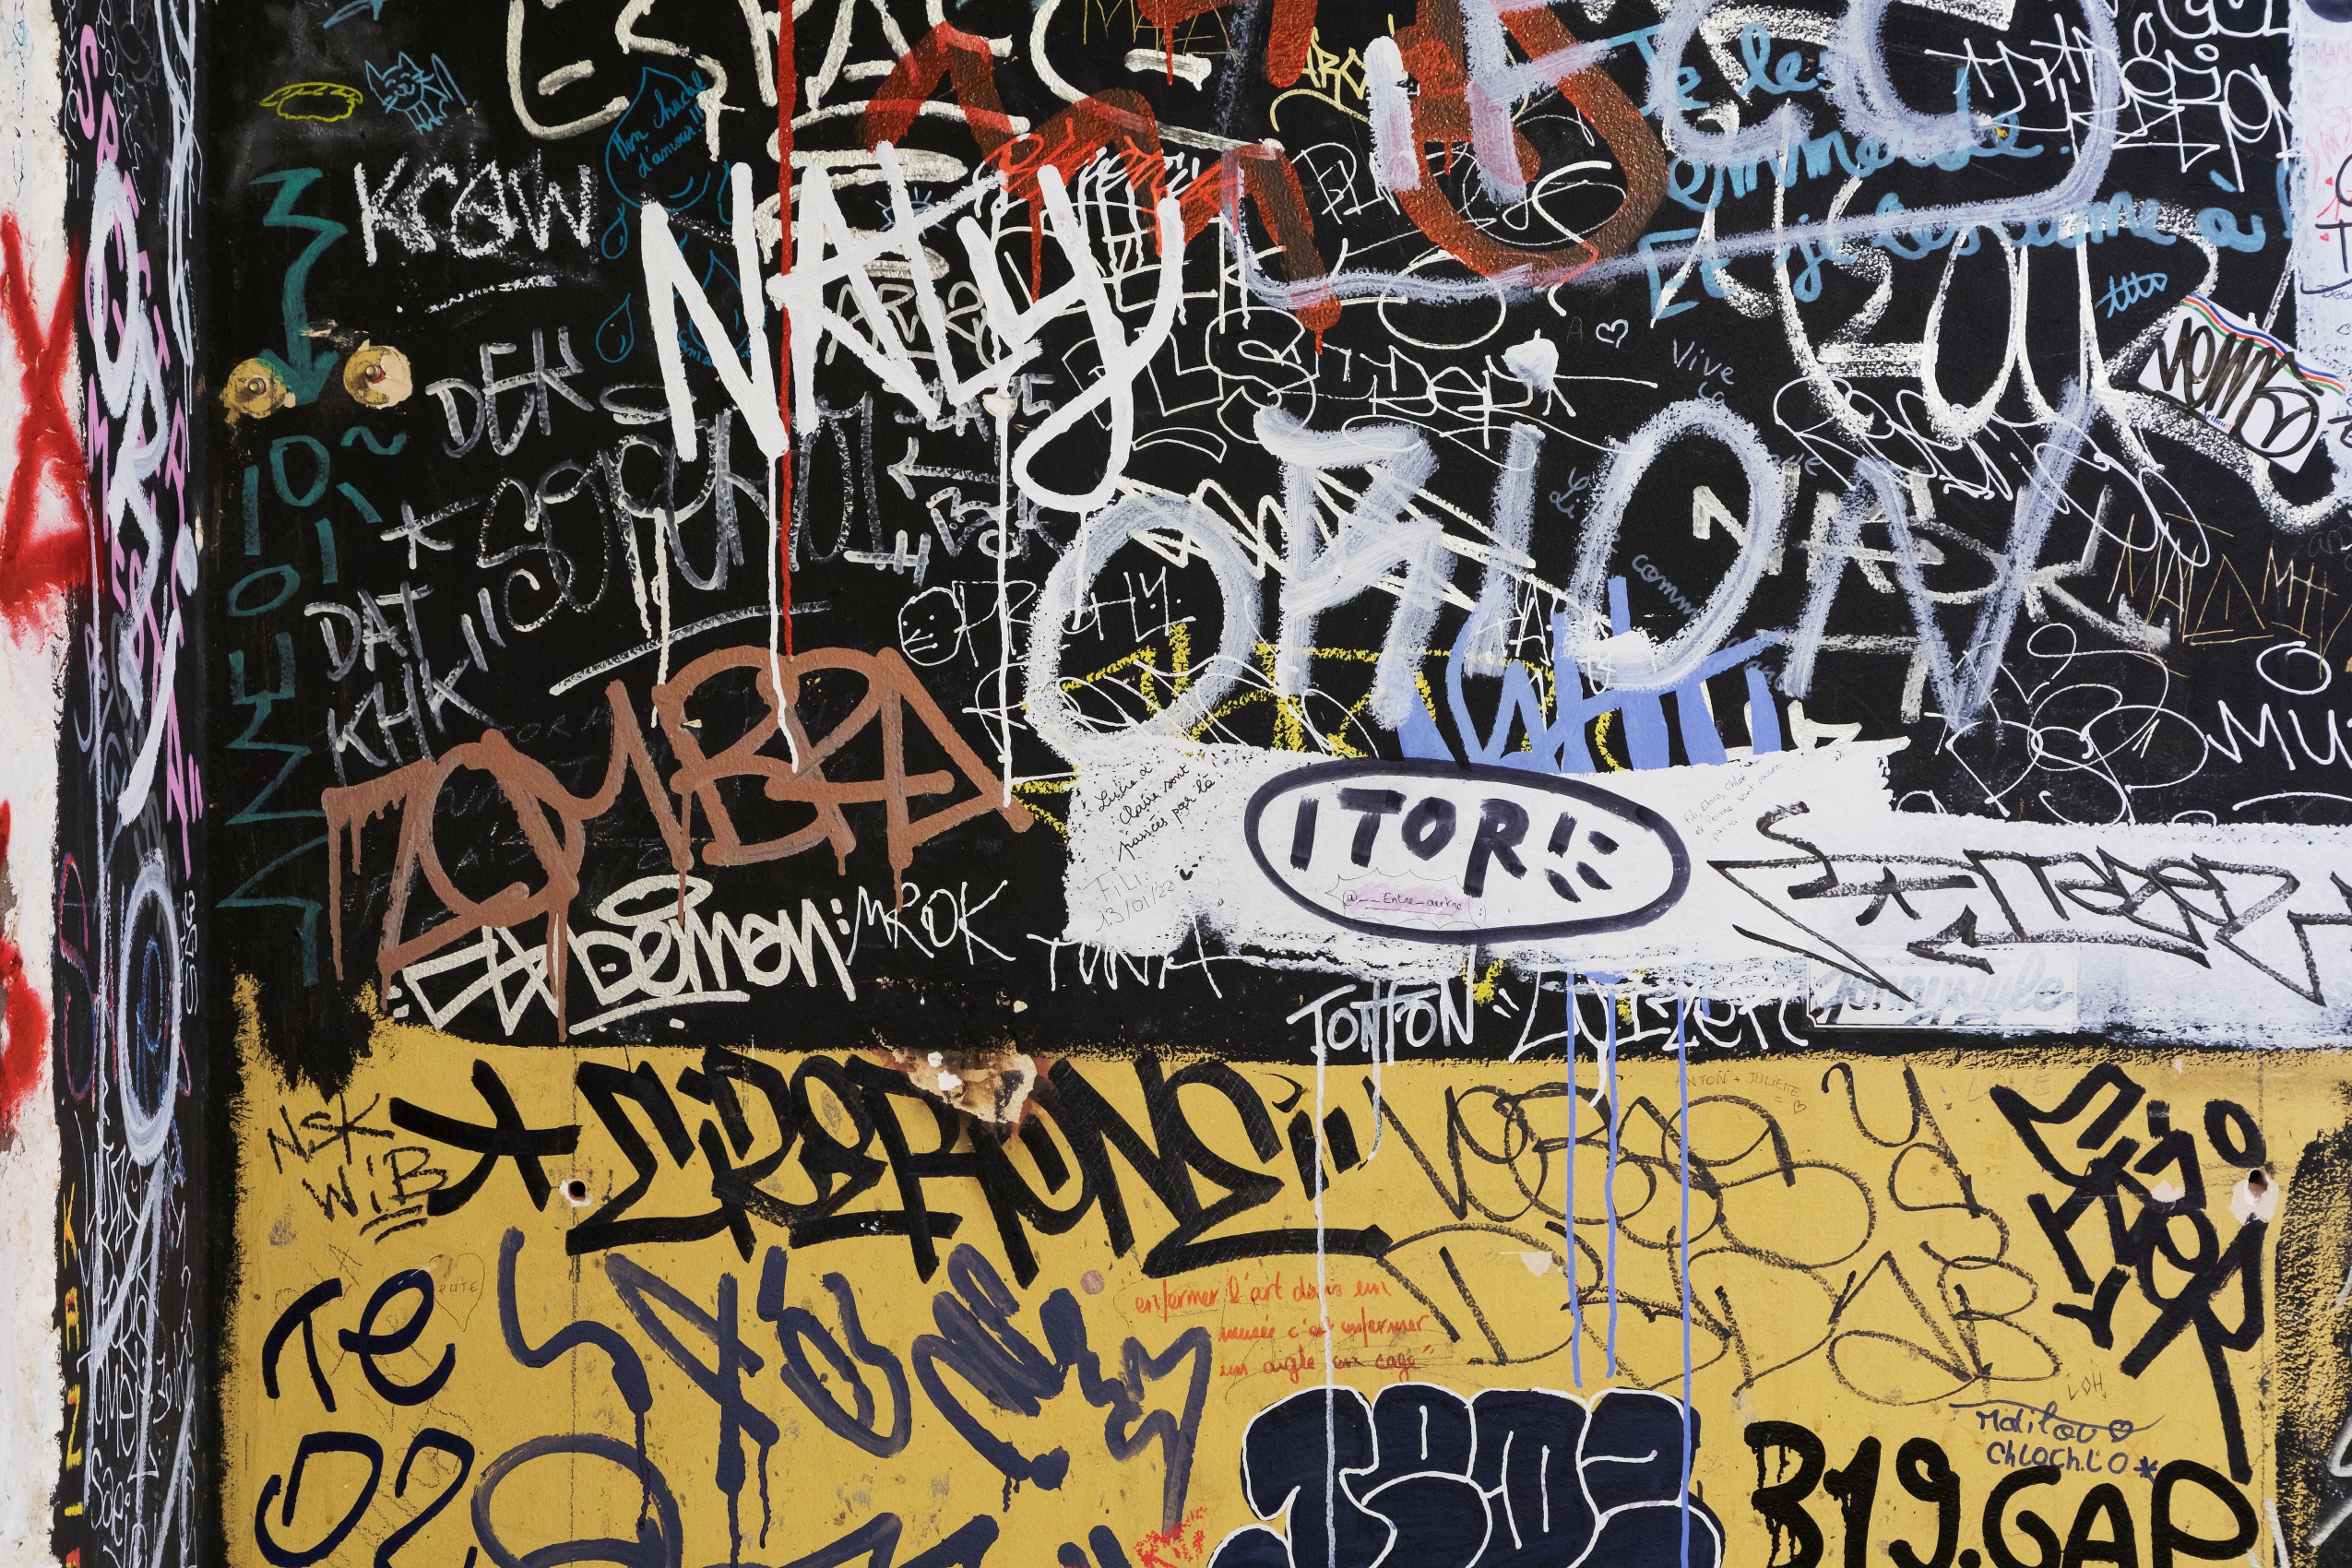 La portion de mur capturée sur l’image est séparée en deux sections colorées (noire et jaune). Elles sont équitablement recouvertes de graffitis plus ou moins amateurs : Zombra, Naty, Krow, Orion, Tonton, Demon, etc. 